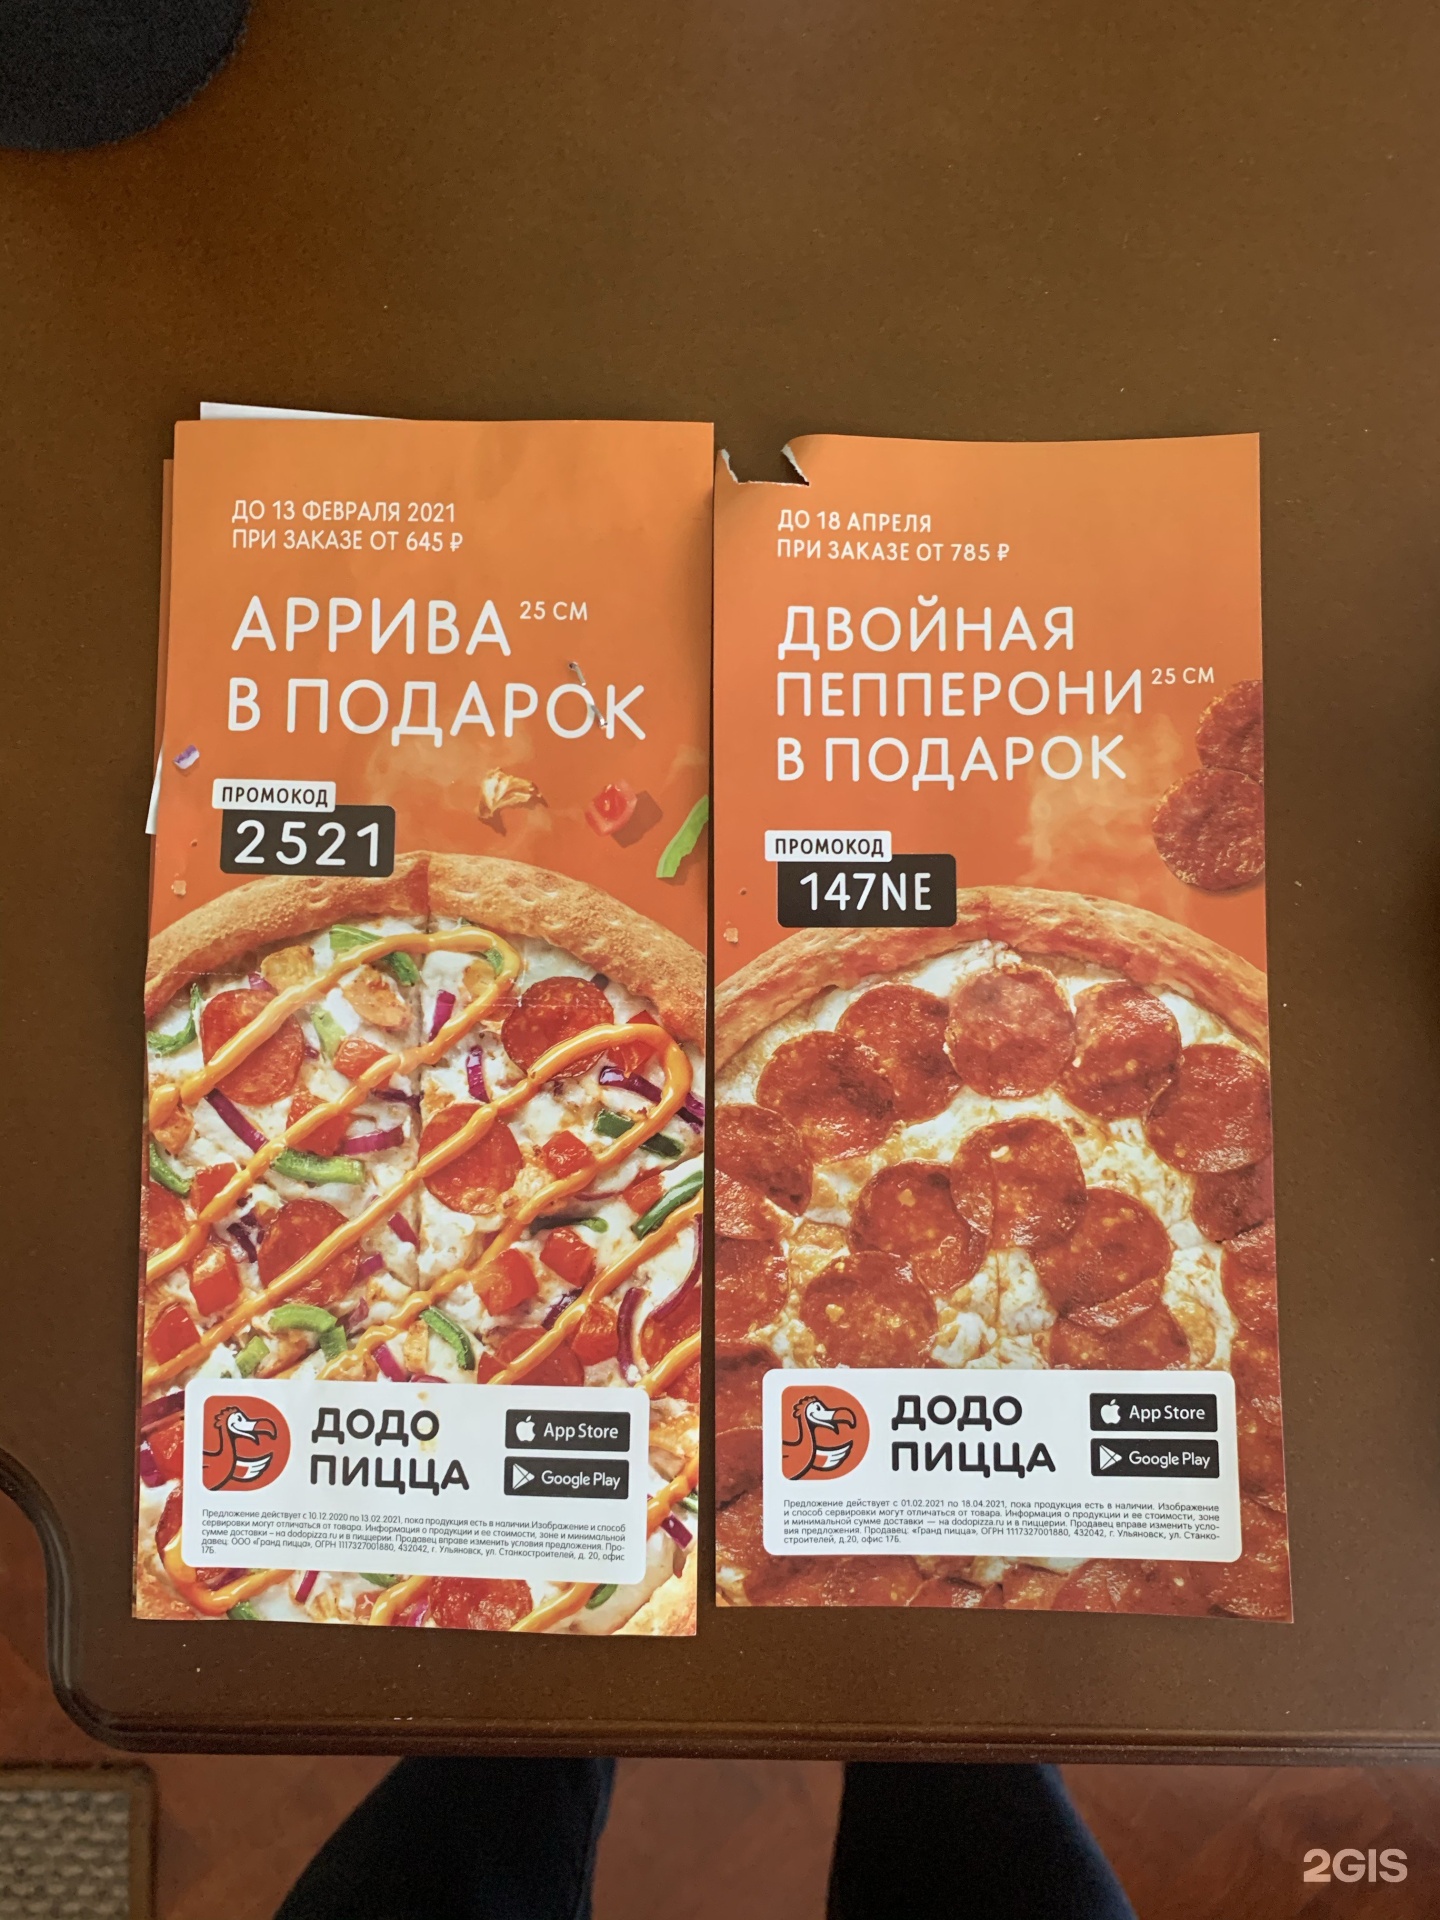 ассортимент додо пицца ульяновск фото 66